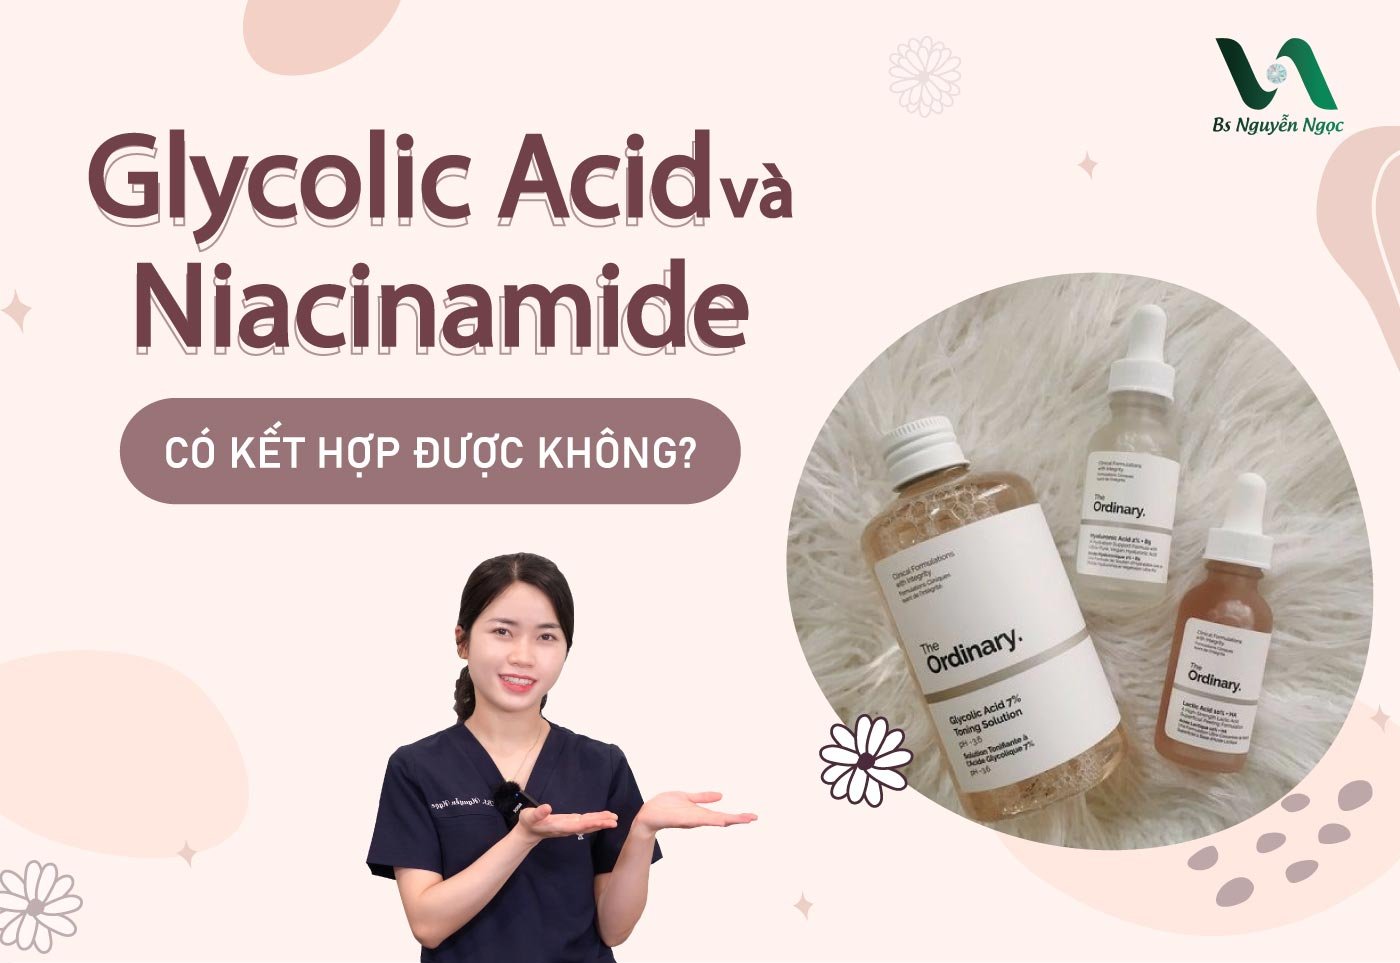 Glycolic Acid và Niacinamide có kết hợp được không?